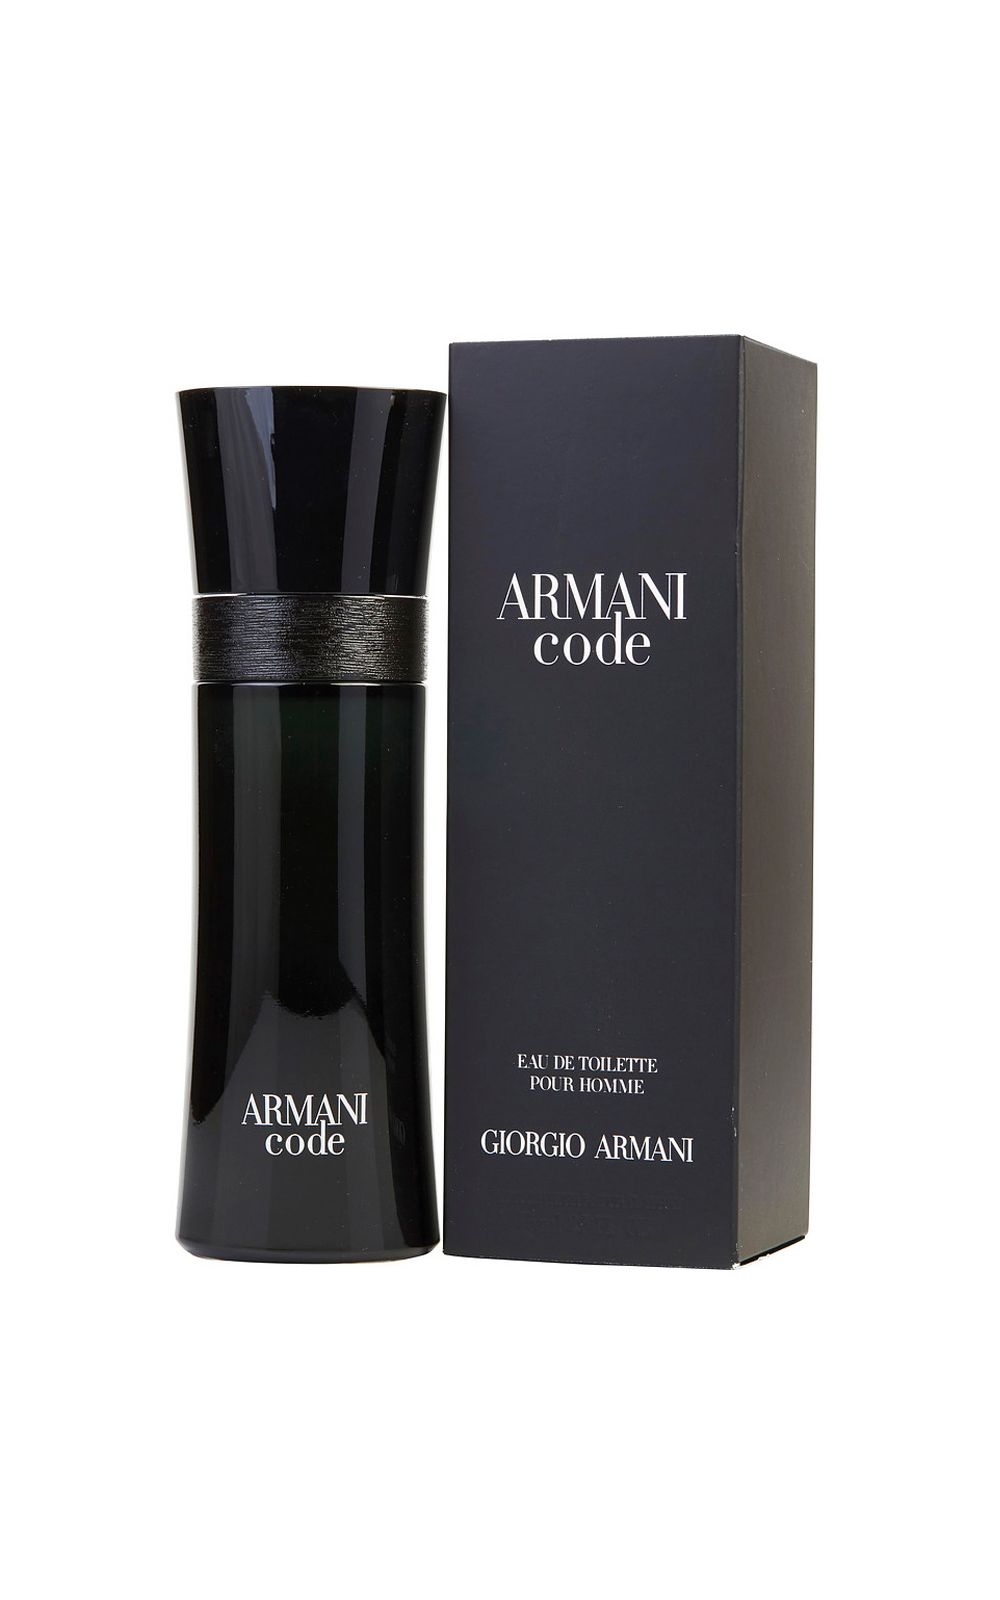 Foto 2 - Armani Code Giorgio Armani - Perfume Masculino - Eau de Toilette - 50ml